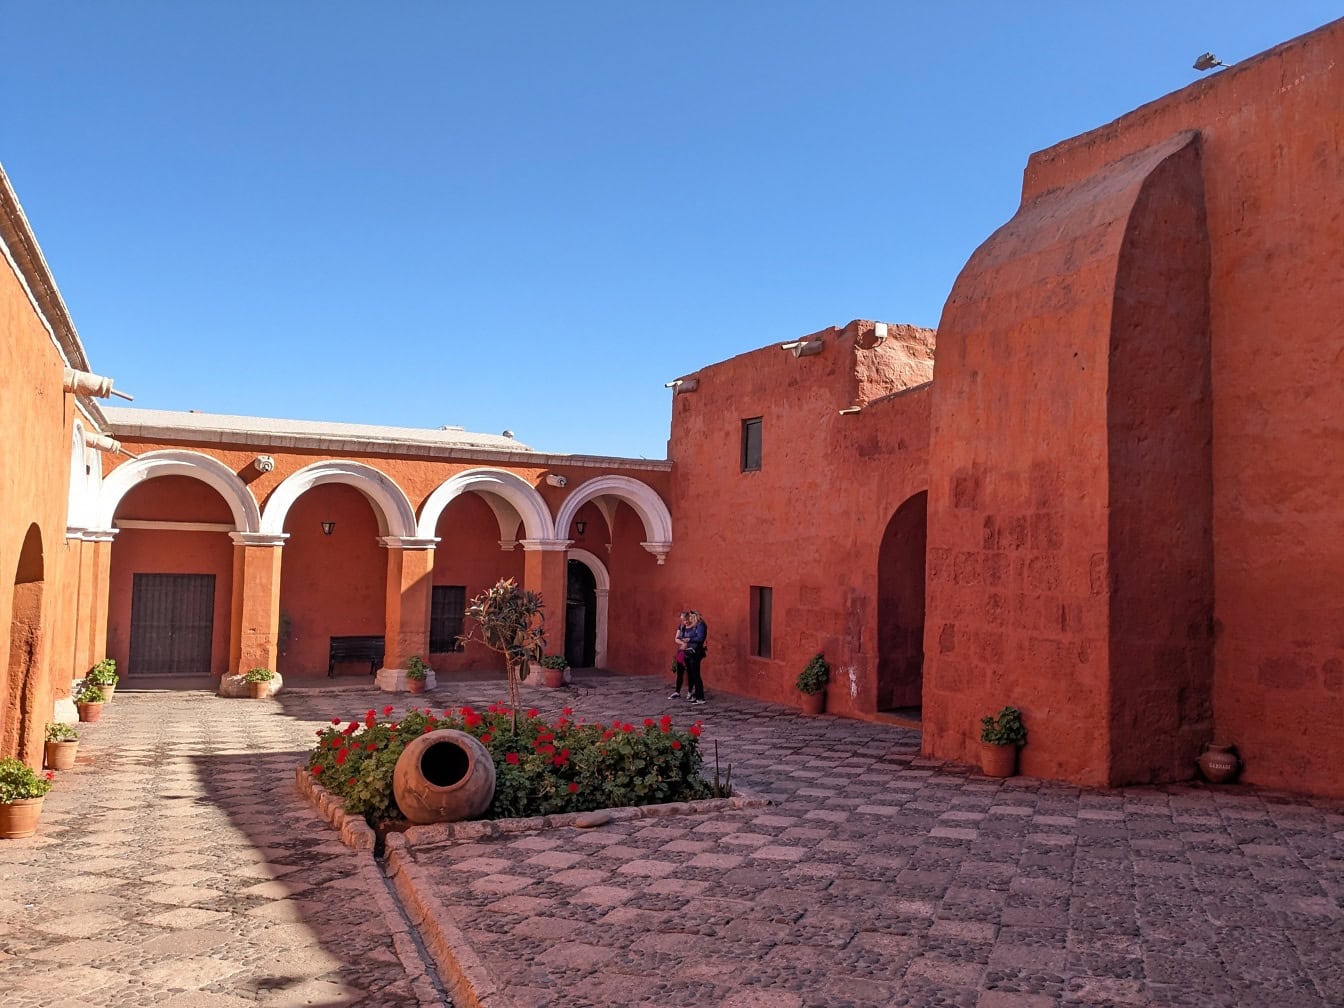 Památka světového dědictví UNESCO, nádvoří s klenbami v klášteře dominikánského druhého řádu Santa Catalina de Siena v Arequipě v Peru